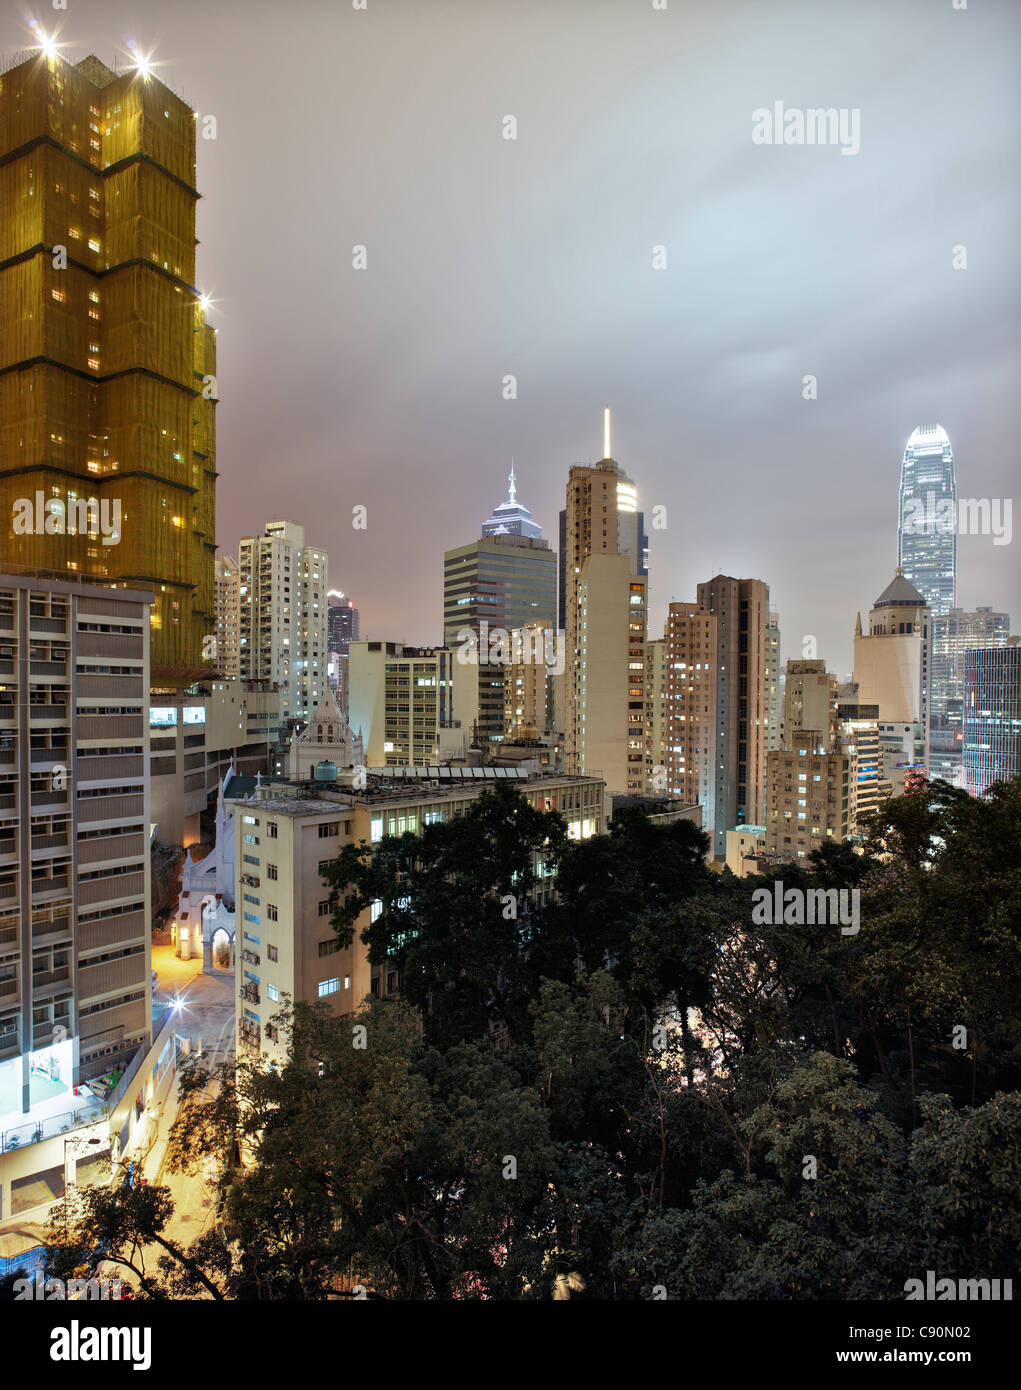 Hongkong Skyline and Wan Chai at night, Hong Kong, China Stock Photo